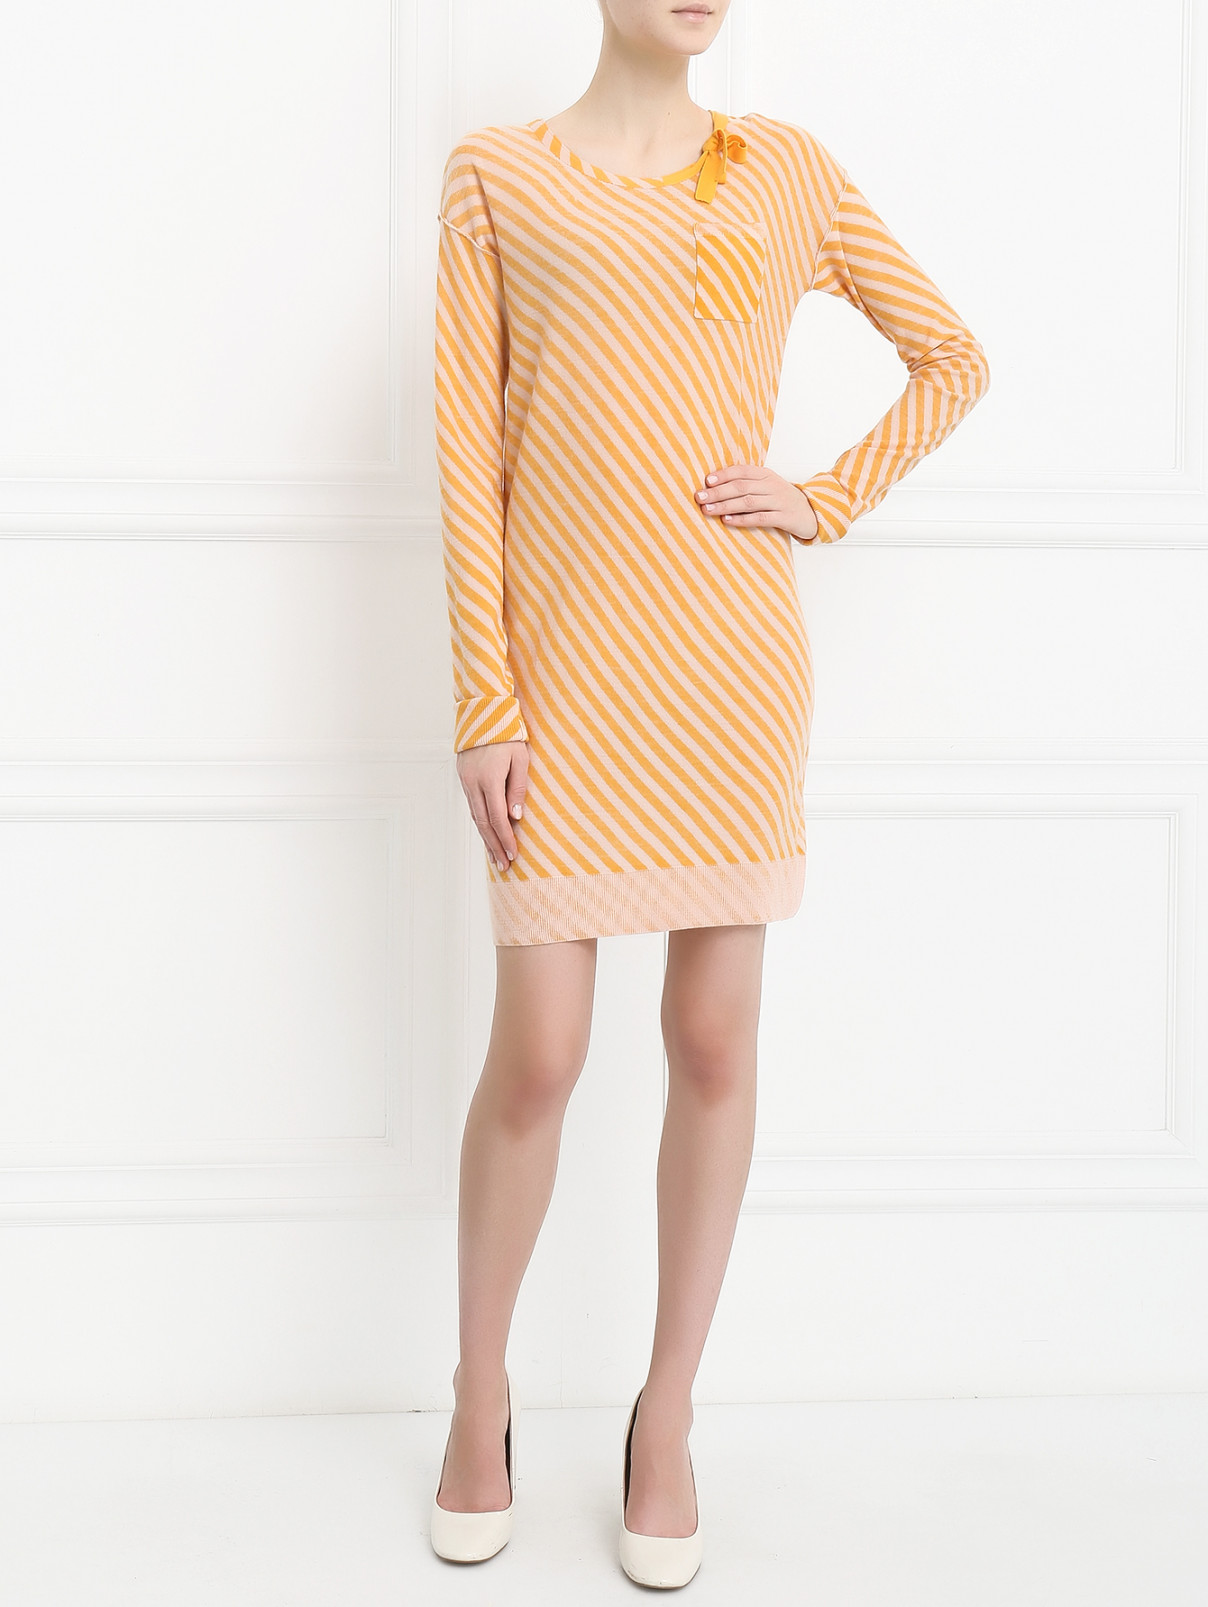 Трикотажное платье с узором "полоска" Sonia Rykiel  –  Модель Общий вид  – Цвет:  Оранжевый